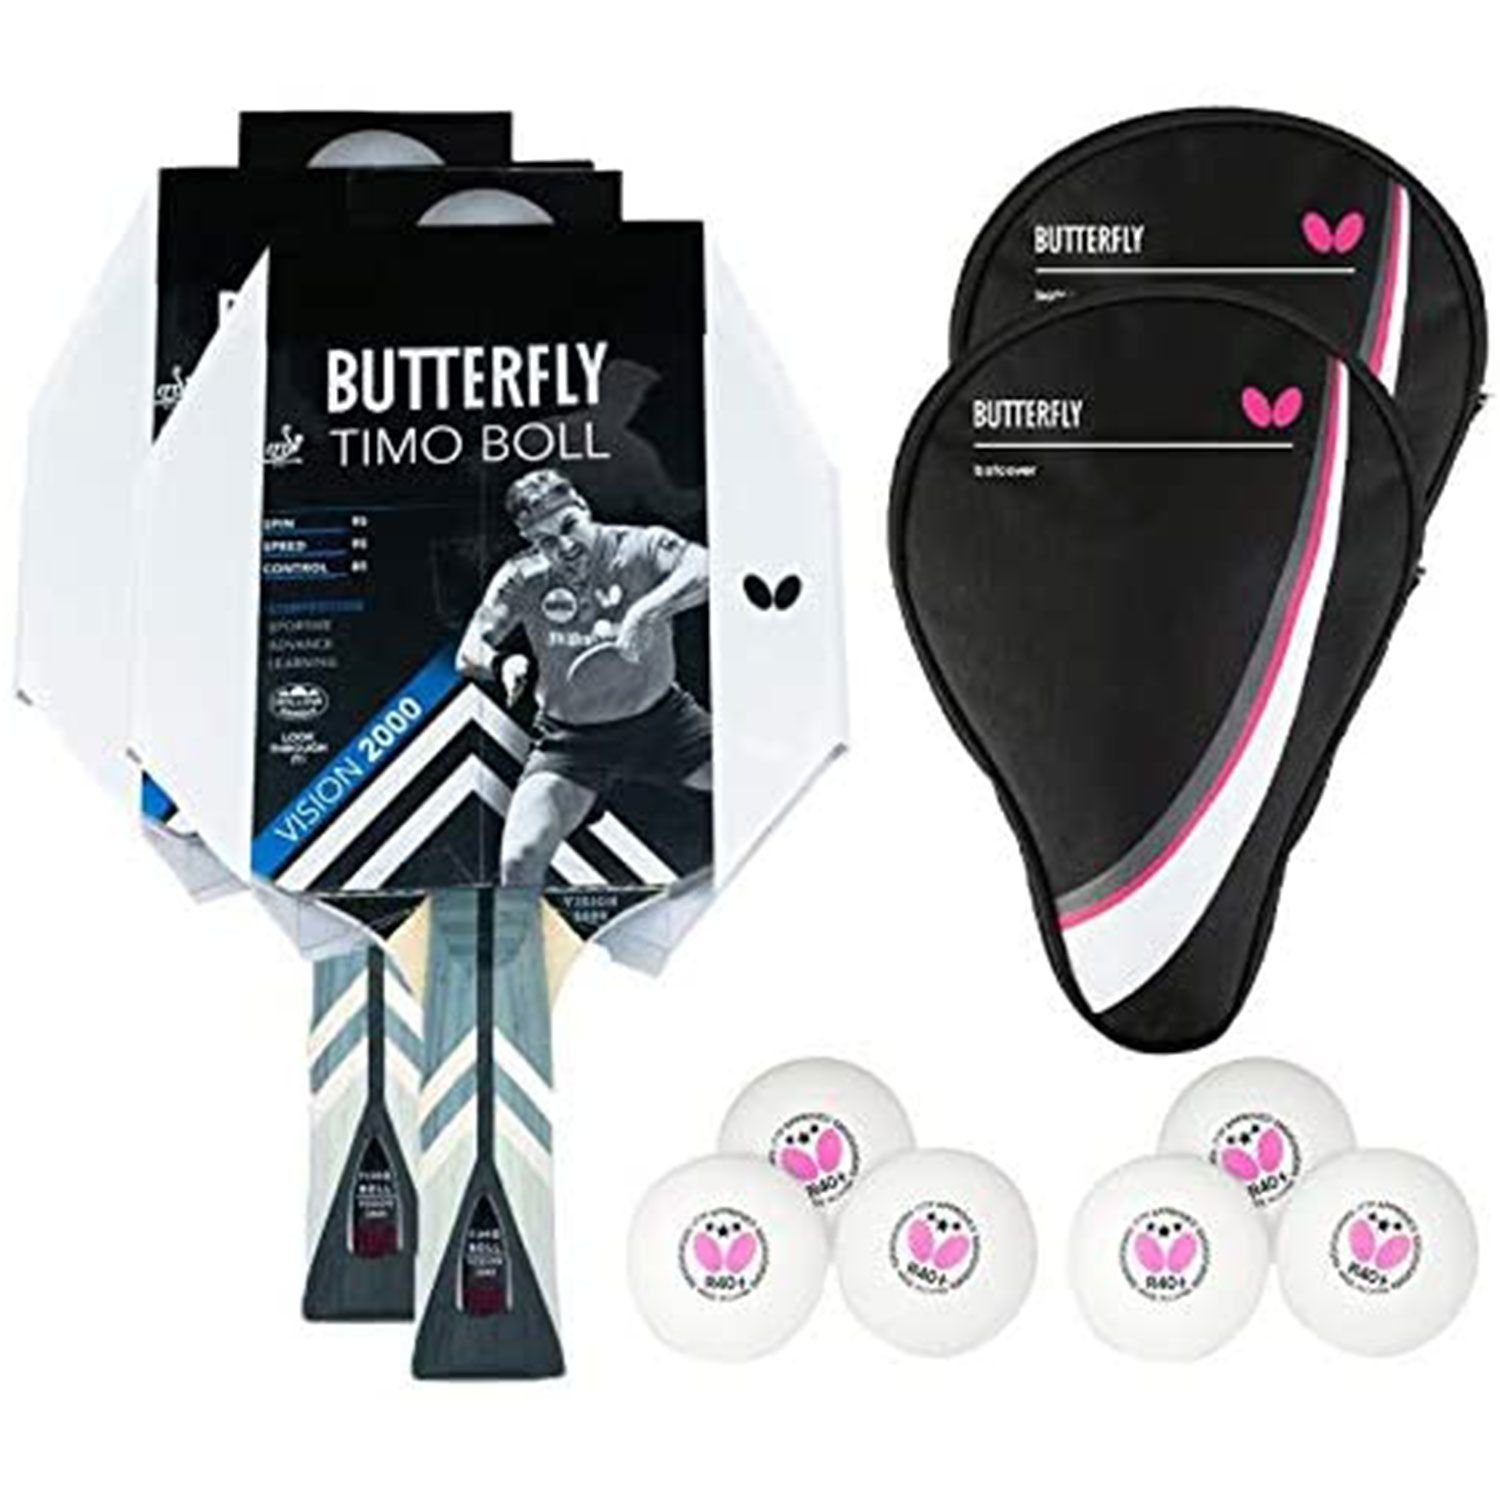 Butterfly Tischtennisschläger Set Drive Bat Bälle, Table Schläger Racket Tischtennisset + Case 2x 2000 Boll Tennis Timo Tischtennis 1 + Vision 2x